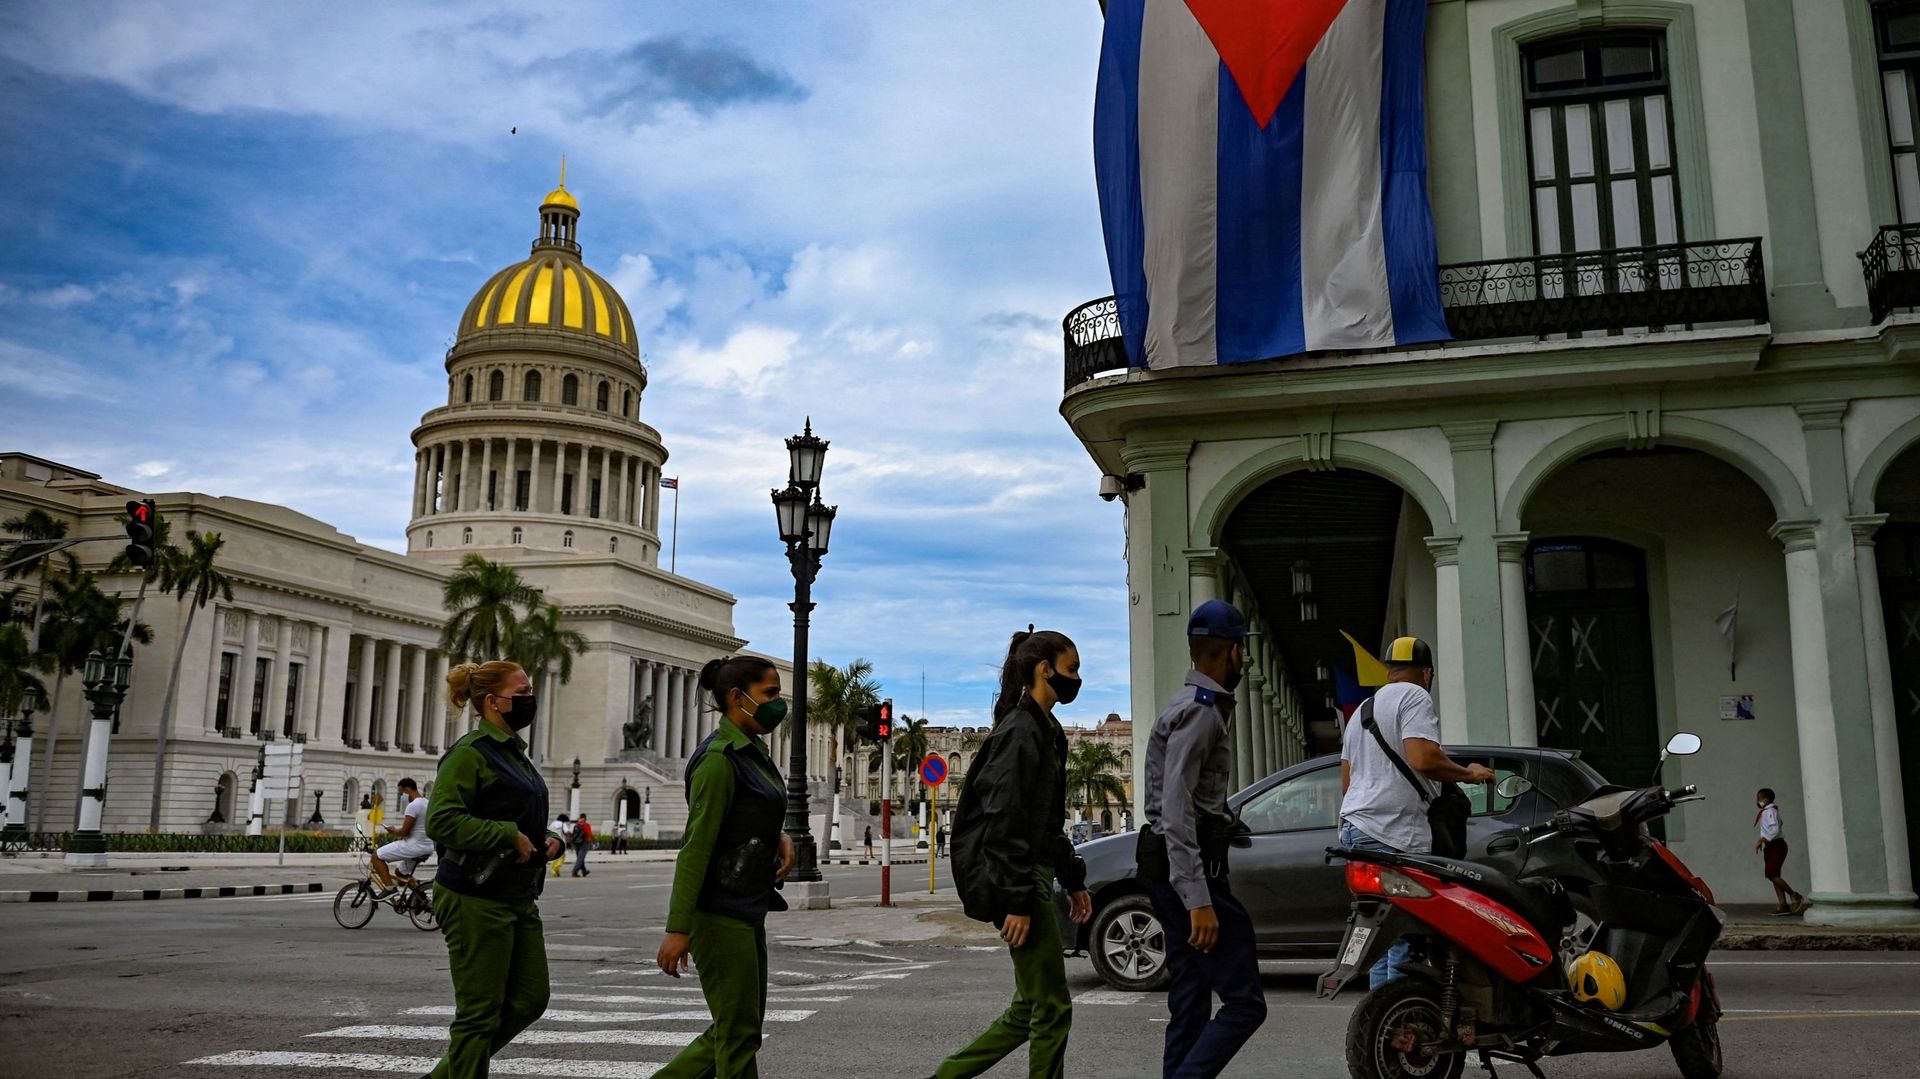 Aux cris de "Liberté!" et de "Nous avons faim!", des milliers de Cubains ont manifesté le 11 juillet 2021 dans une cinquantaine de villes du pays.